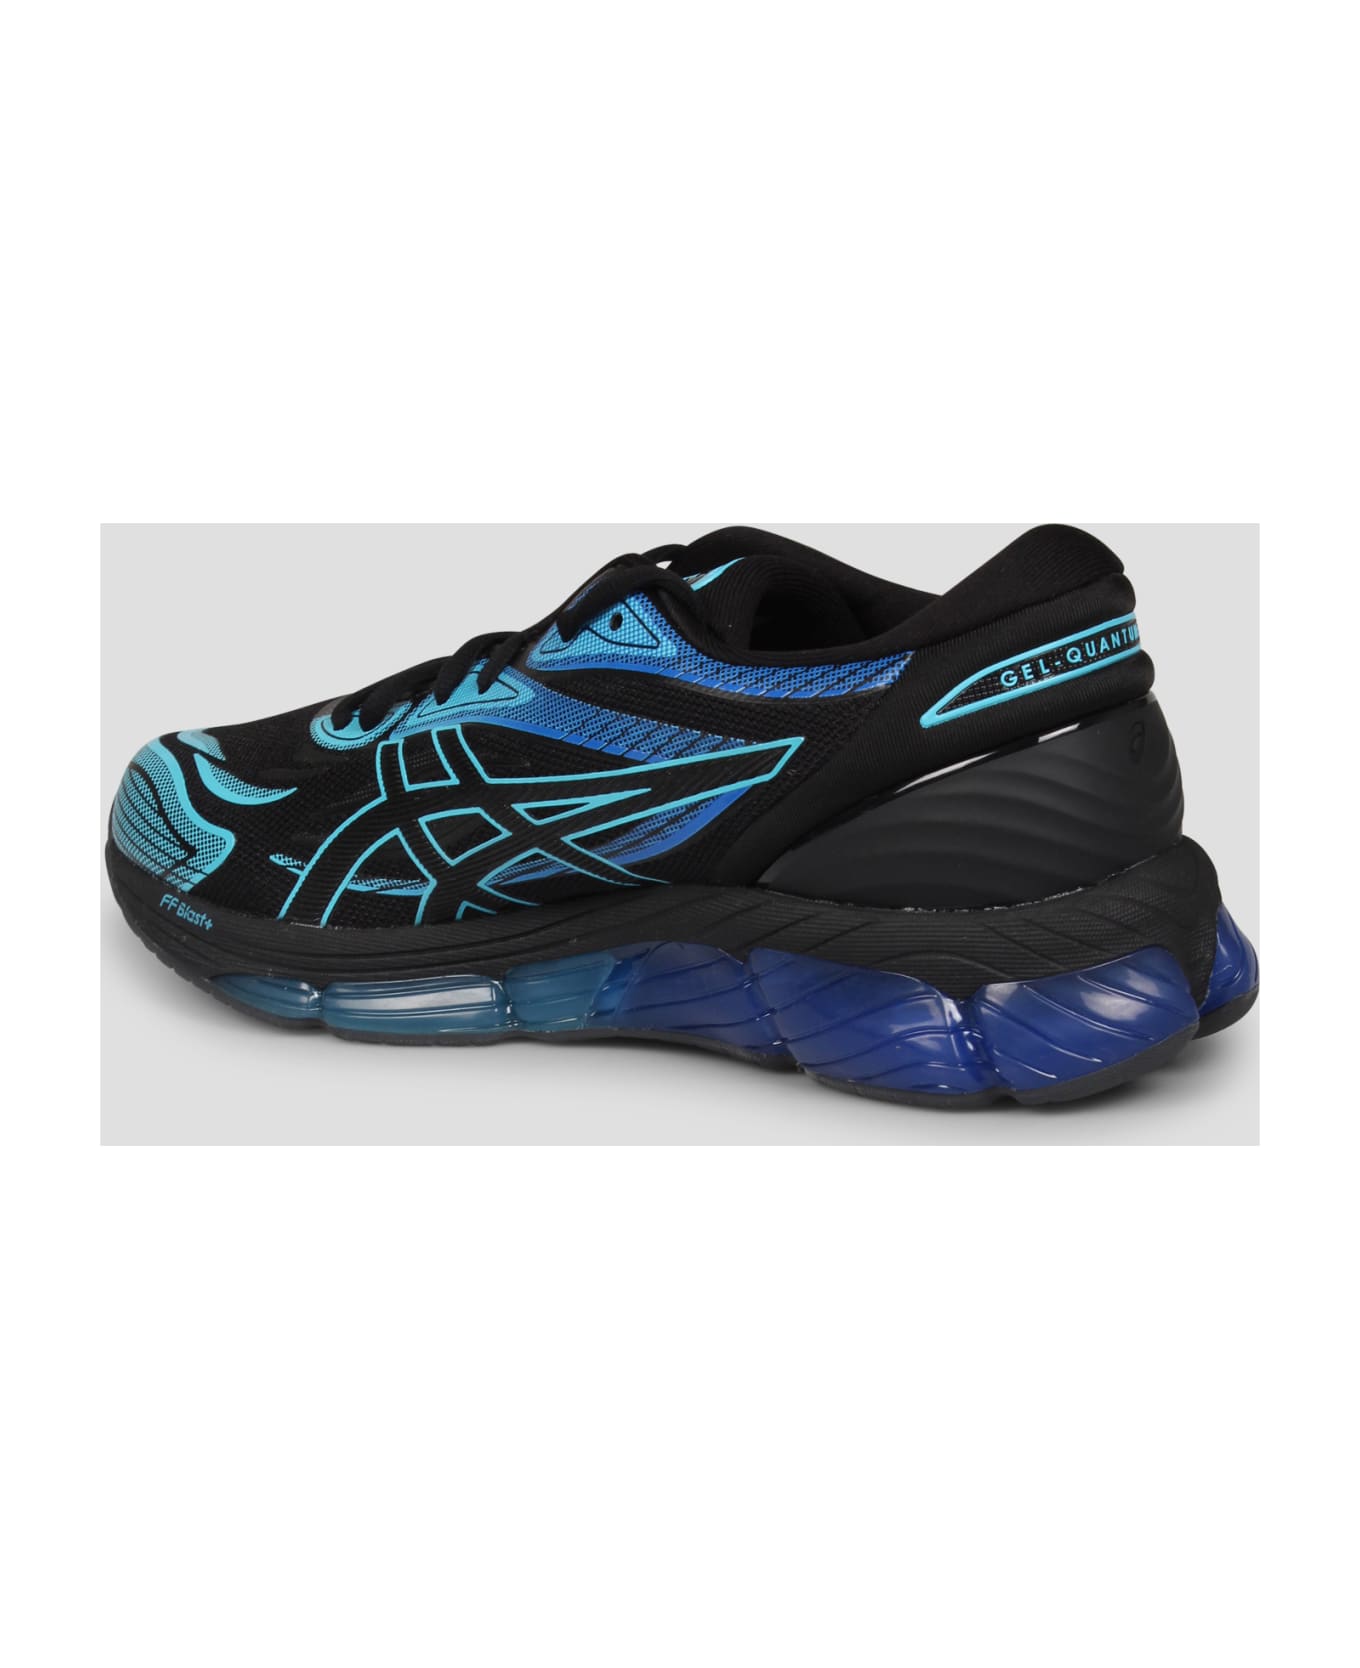 Asics Gel-quantum 360 Viii Sneakers Asics - BLACK/BLUE